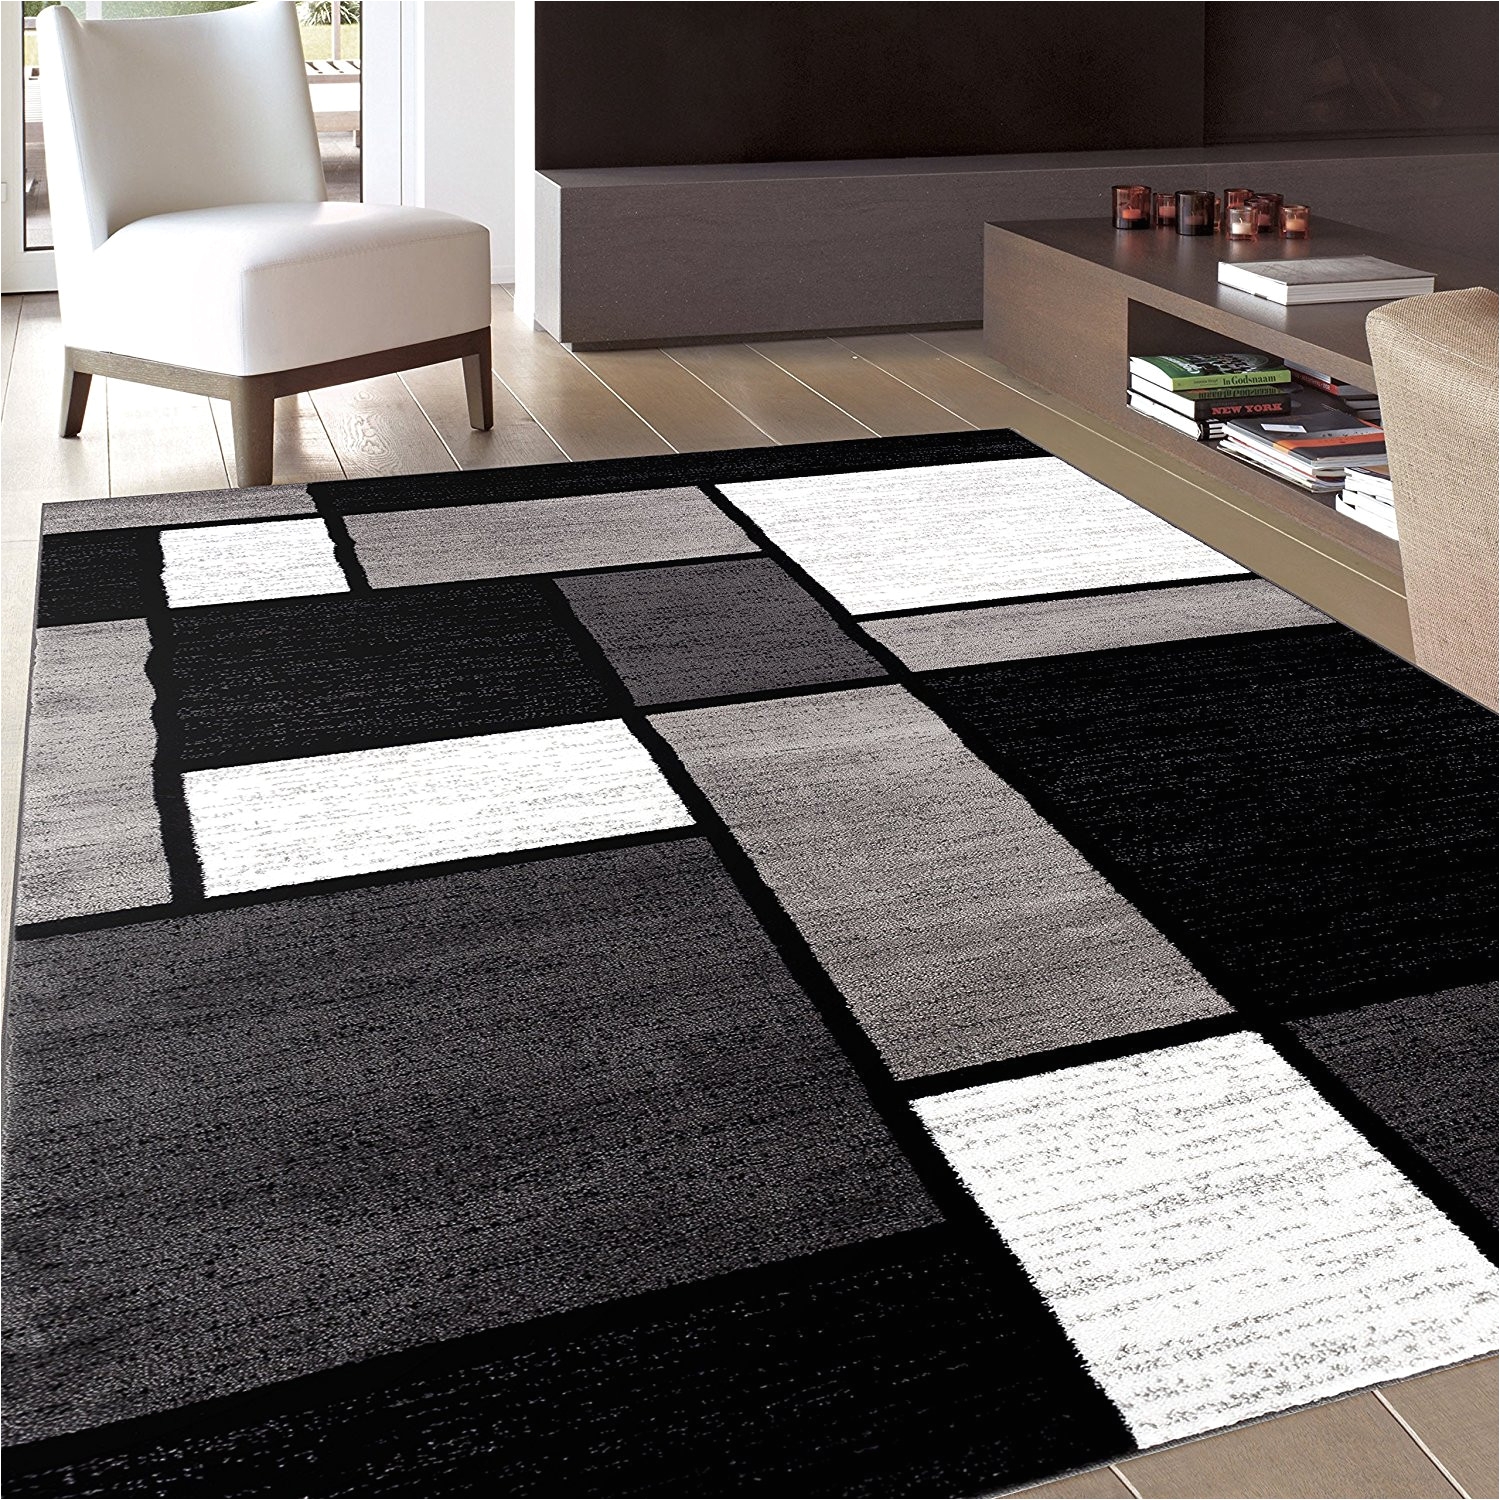 full size of dark gray rug living room gray area rug living room plush area rugs